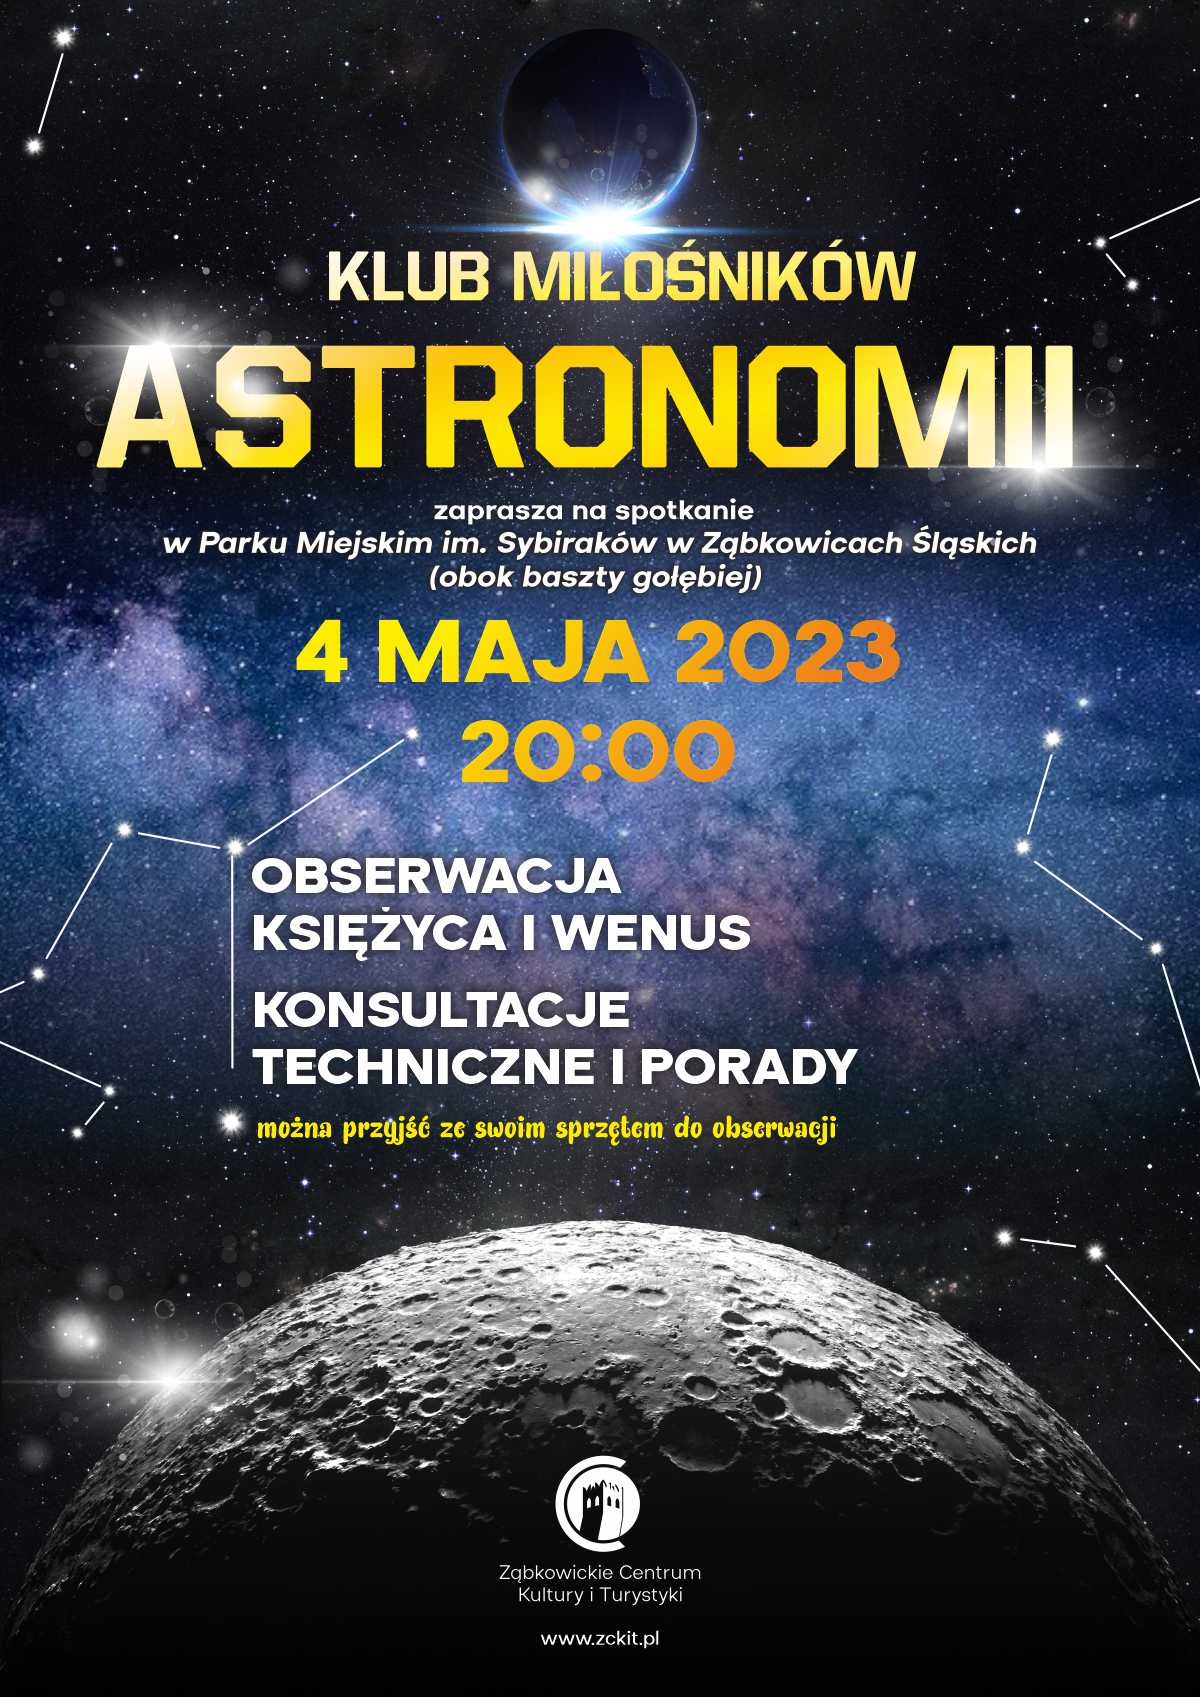 Plakat informujący o spotkaniu Klubu Miłośników Astronomii 4 maja 2023 o godzinie 20:00 w Parku Miejskim im. Sybiraków w Ząbkowicach Śląskich